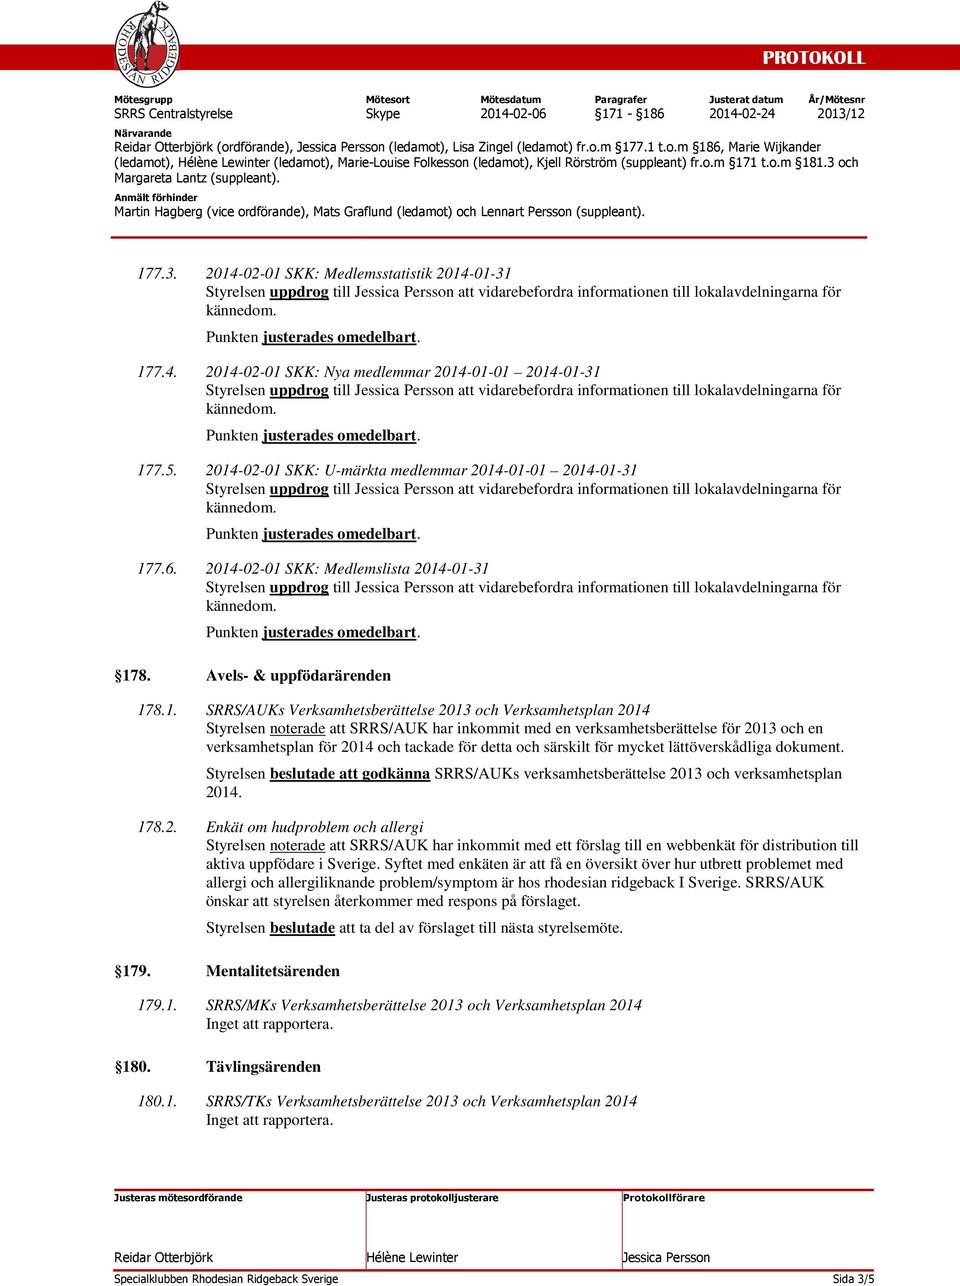 5. 2014-02-01 SKK: U-märkta medlemmar 2014-01-01 2014-01-31 Styrelsen uppdrog till att vidarebefordra informationen till lokalavdelningarna för 177.6.